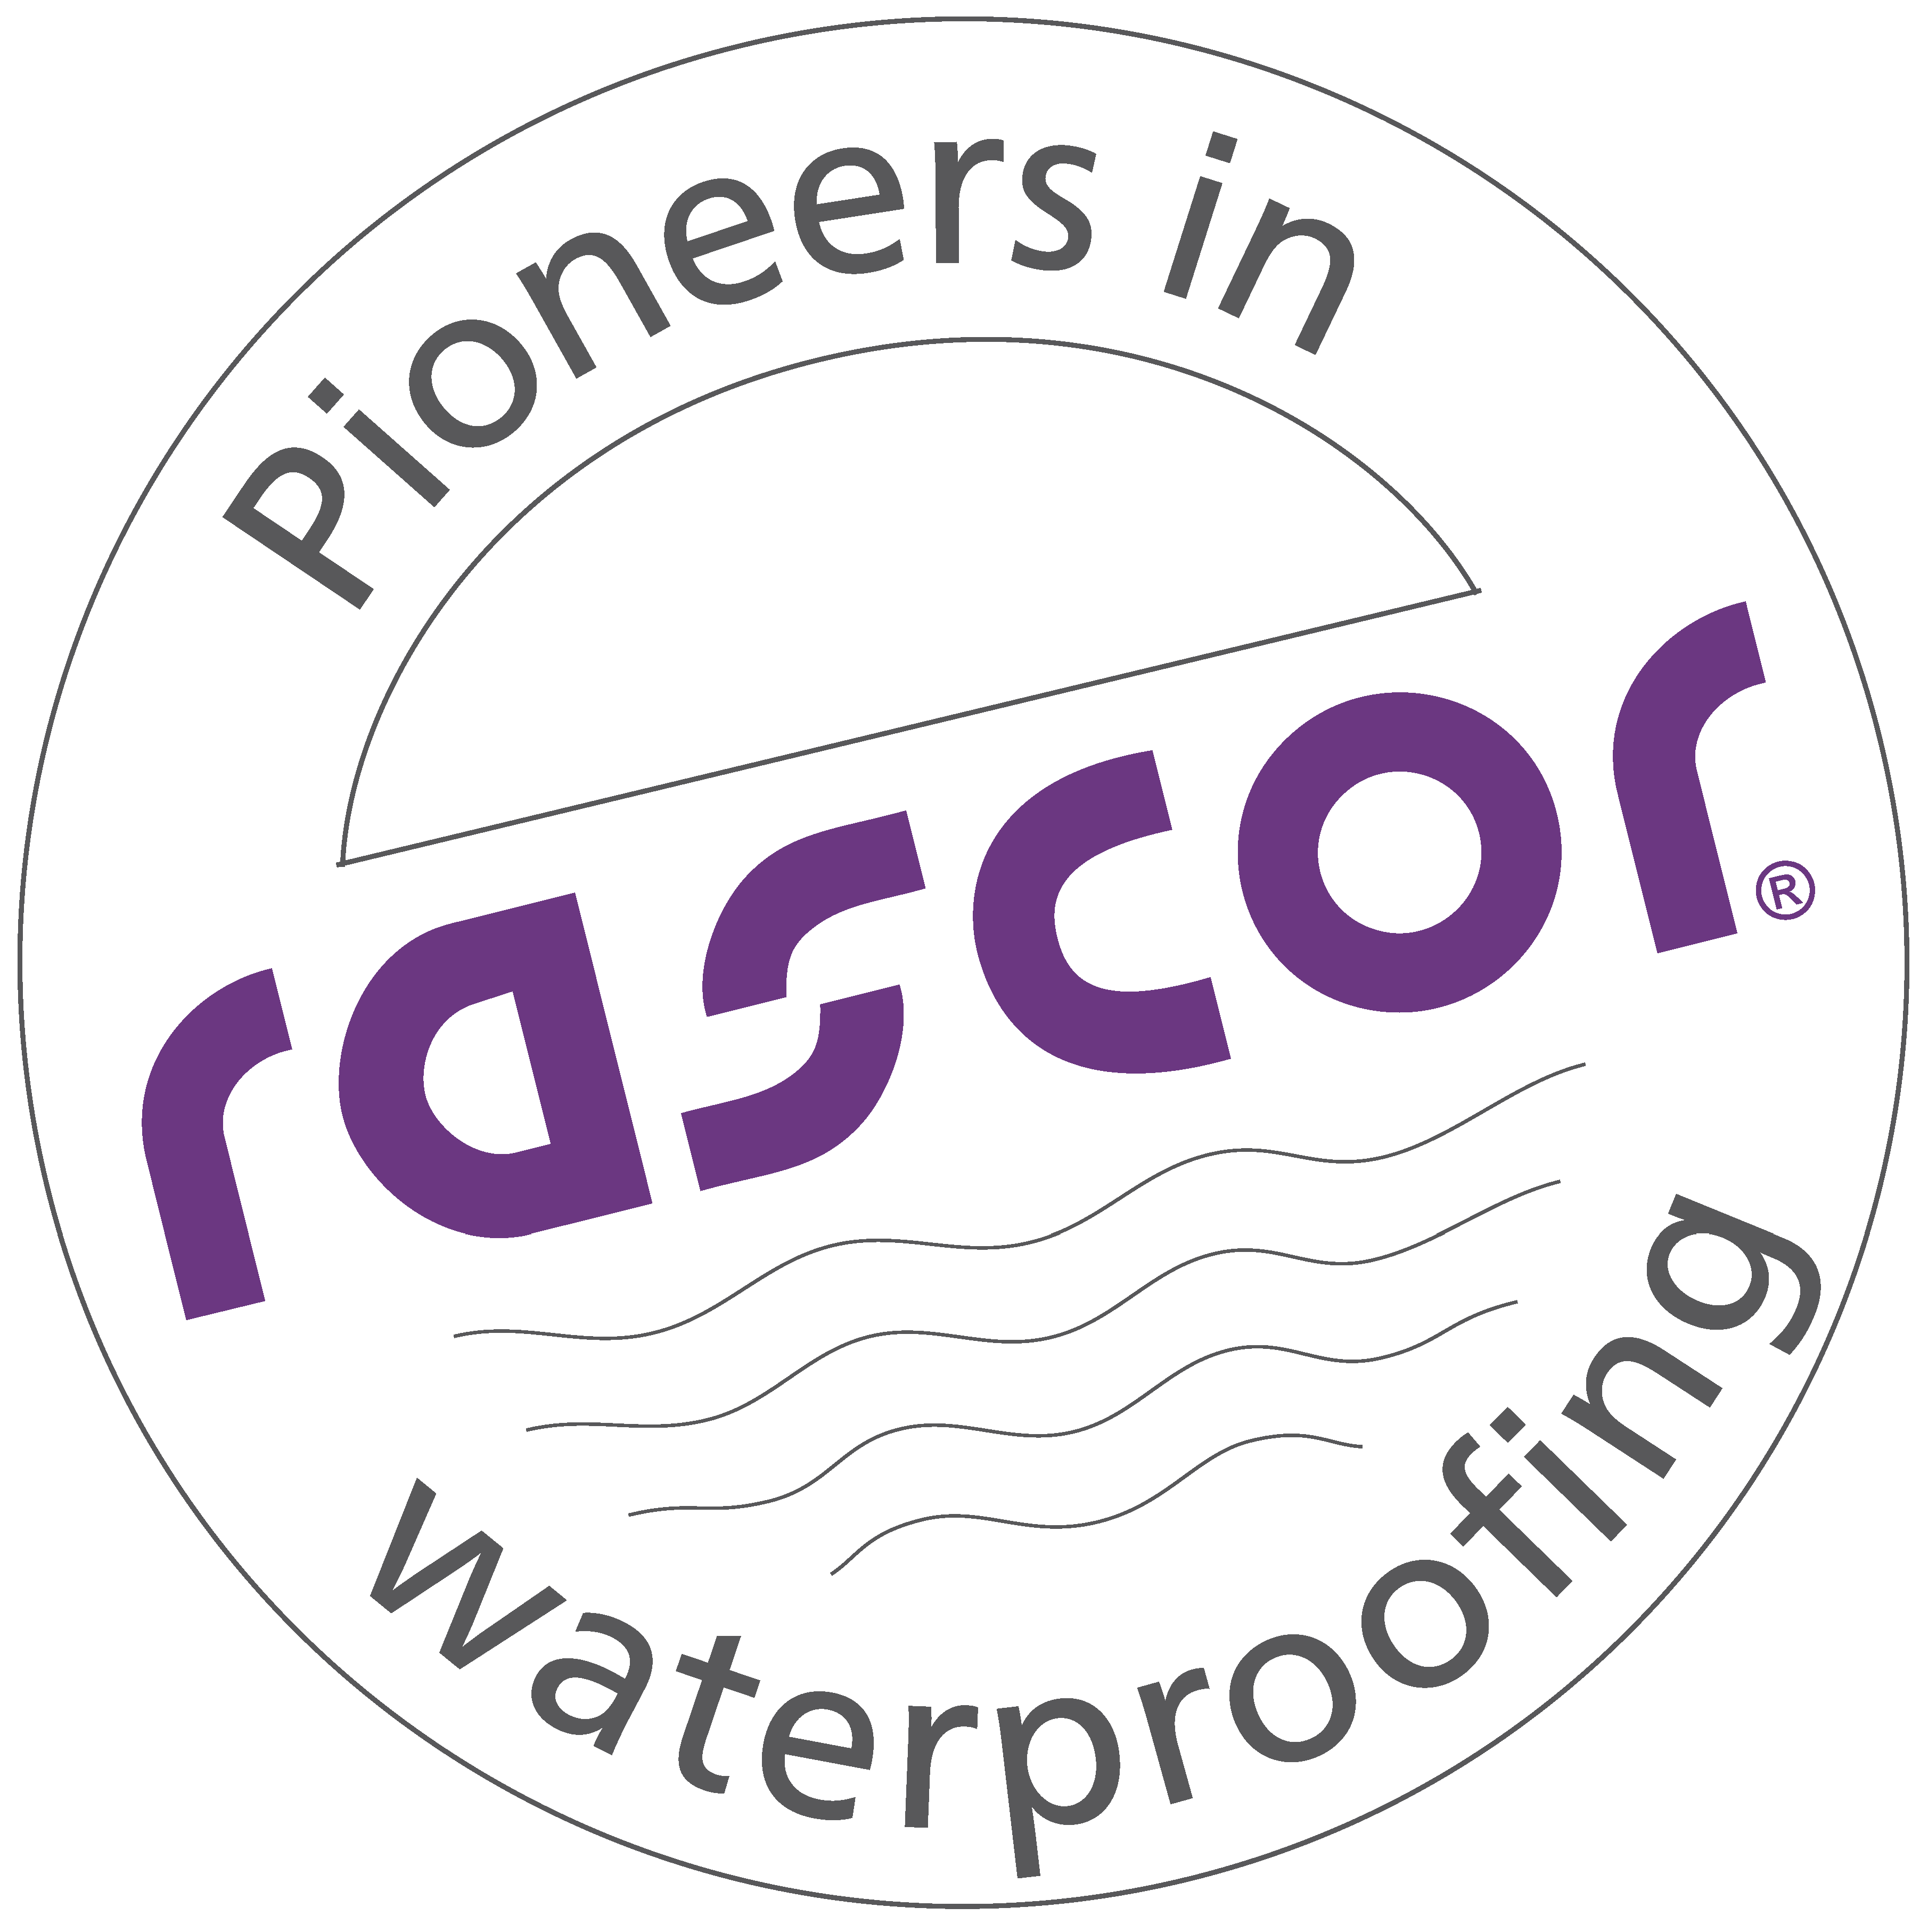 Rascor Pioneers in Waterproofing